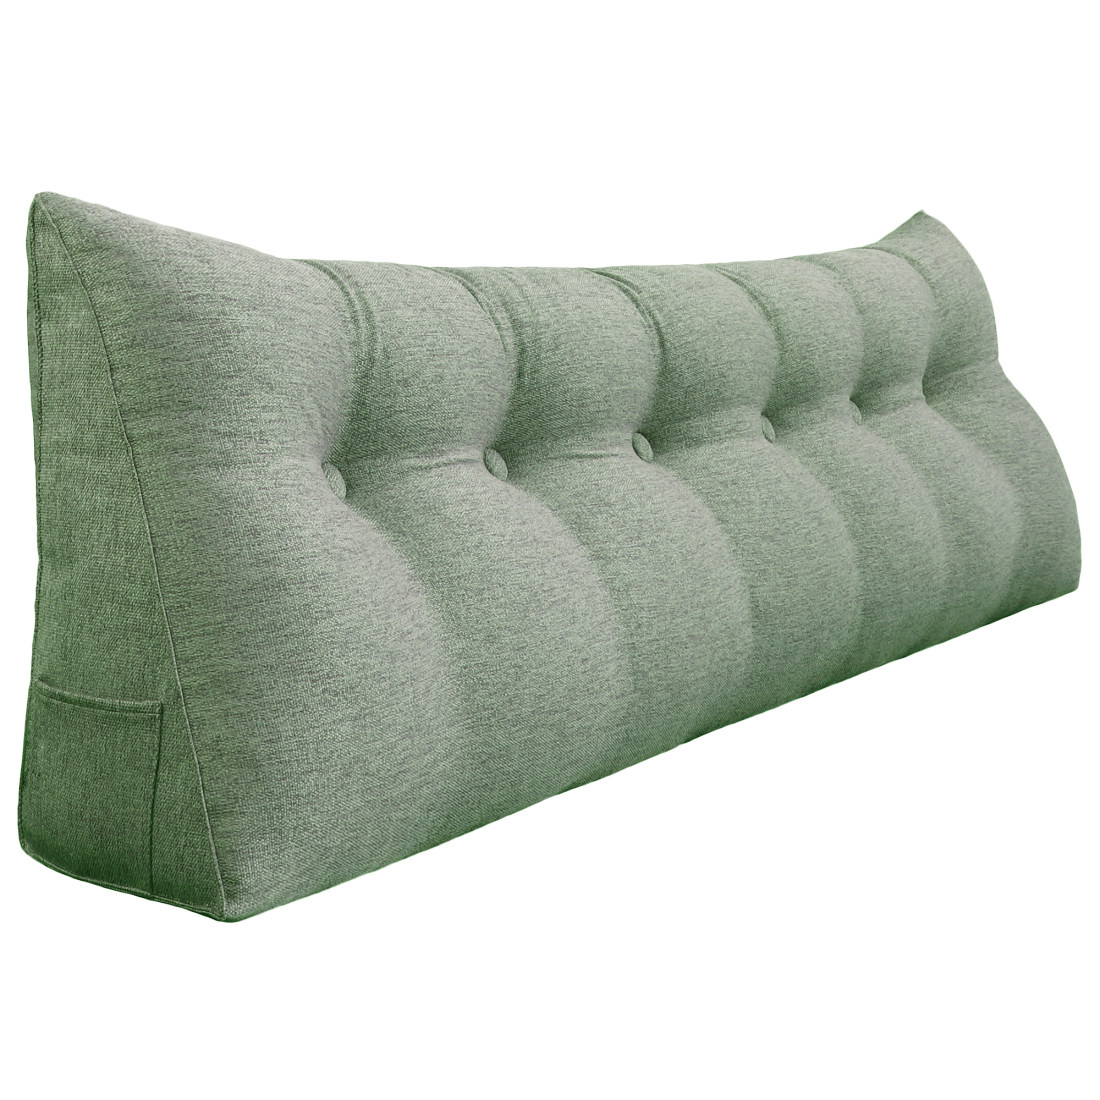 https://www.zencent.com/wp-content/uploads/2020/06/961-backrest-pillow-72inch-green-1.jpg